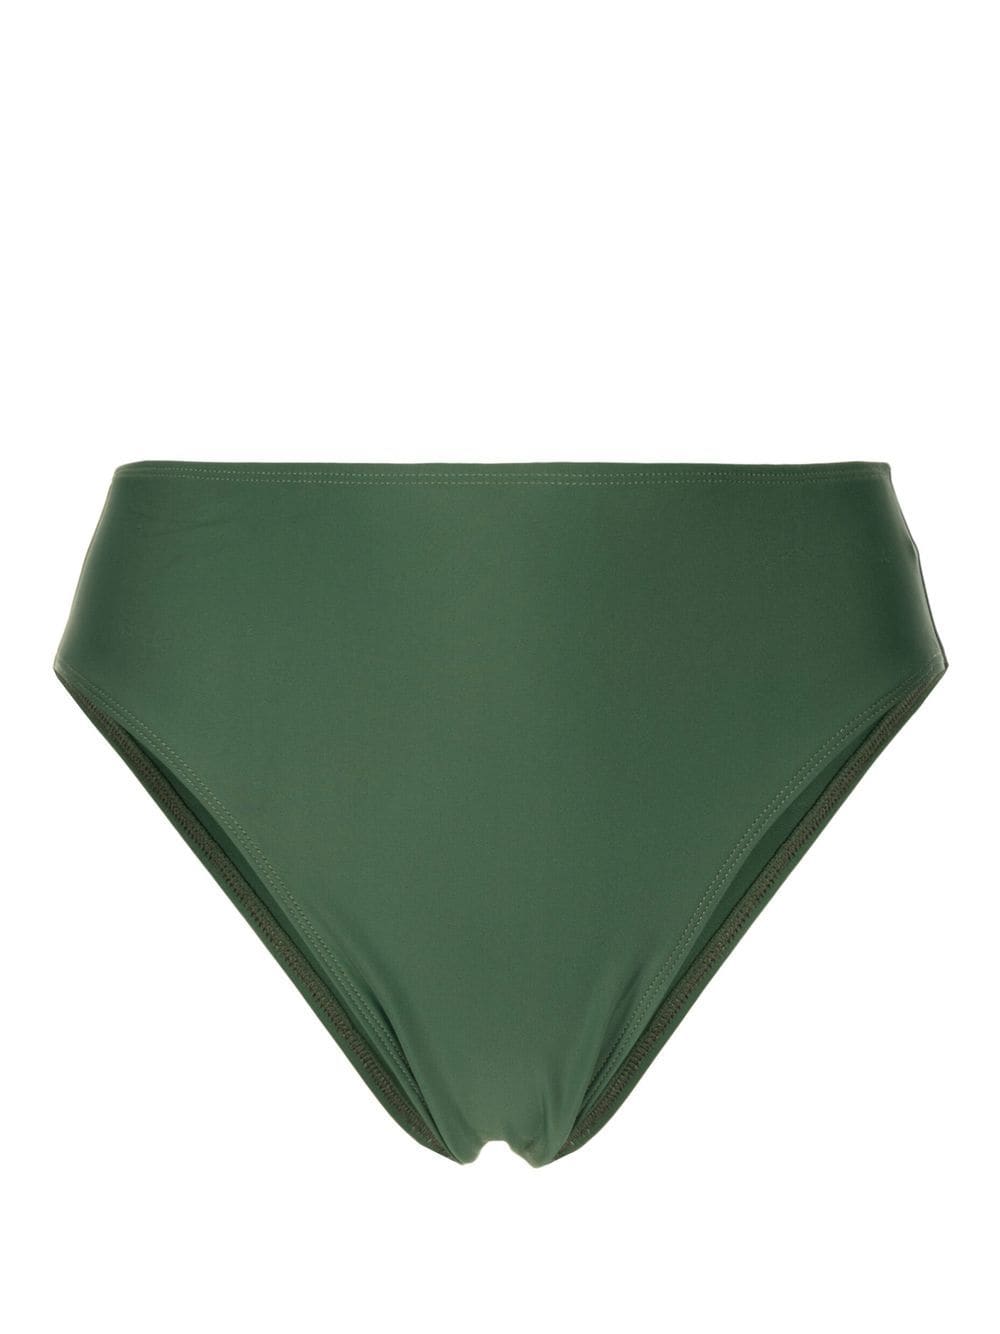 Chania high-waist bikini bottoms